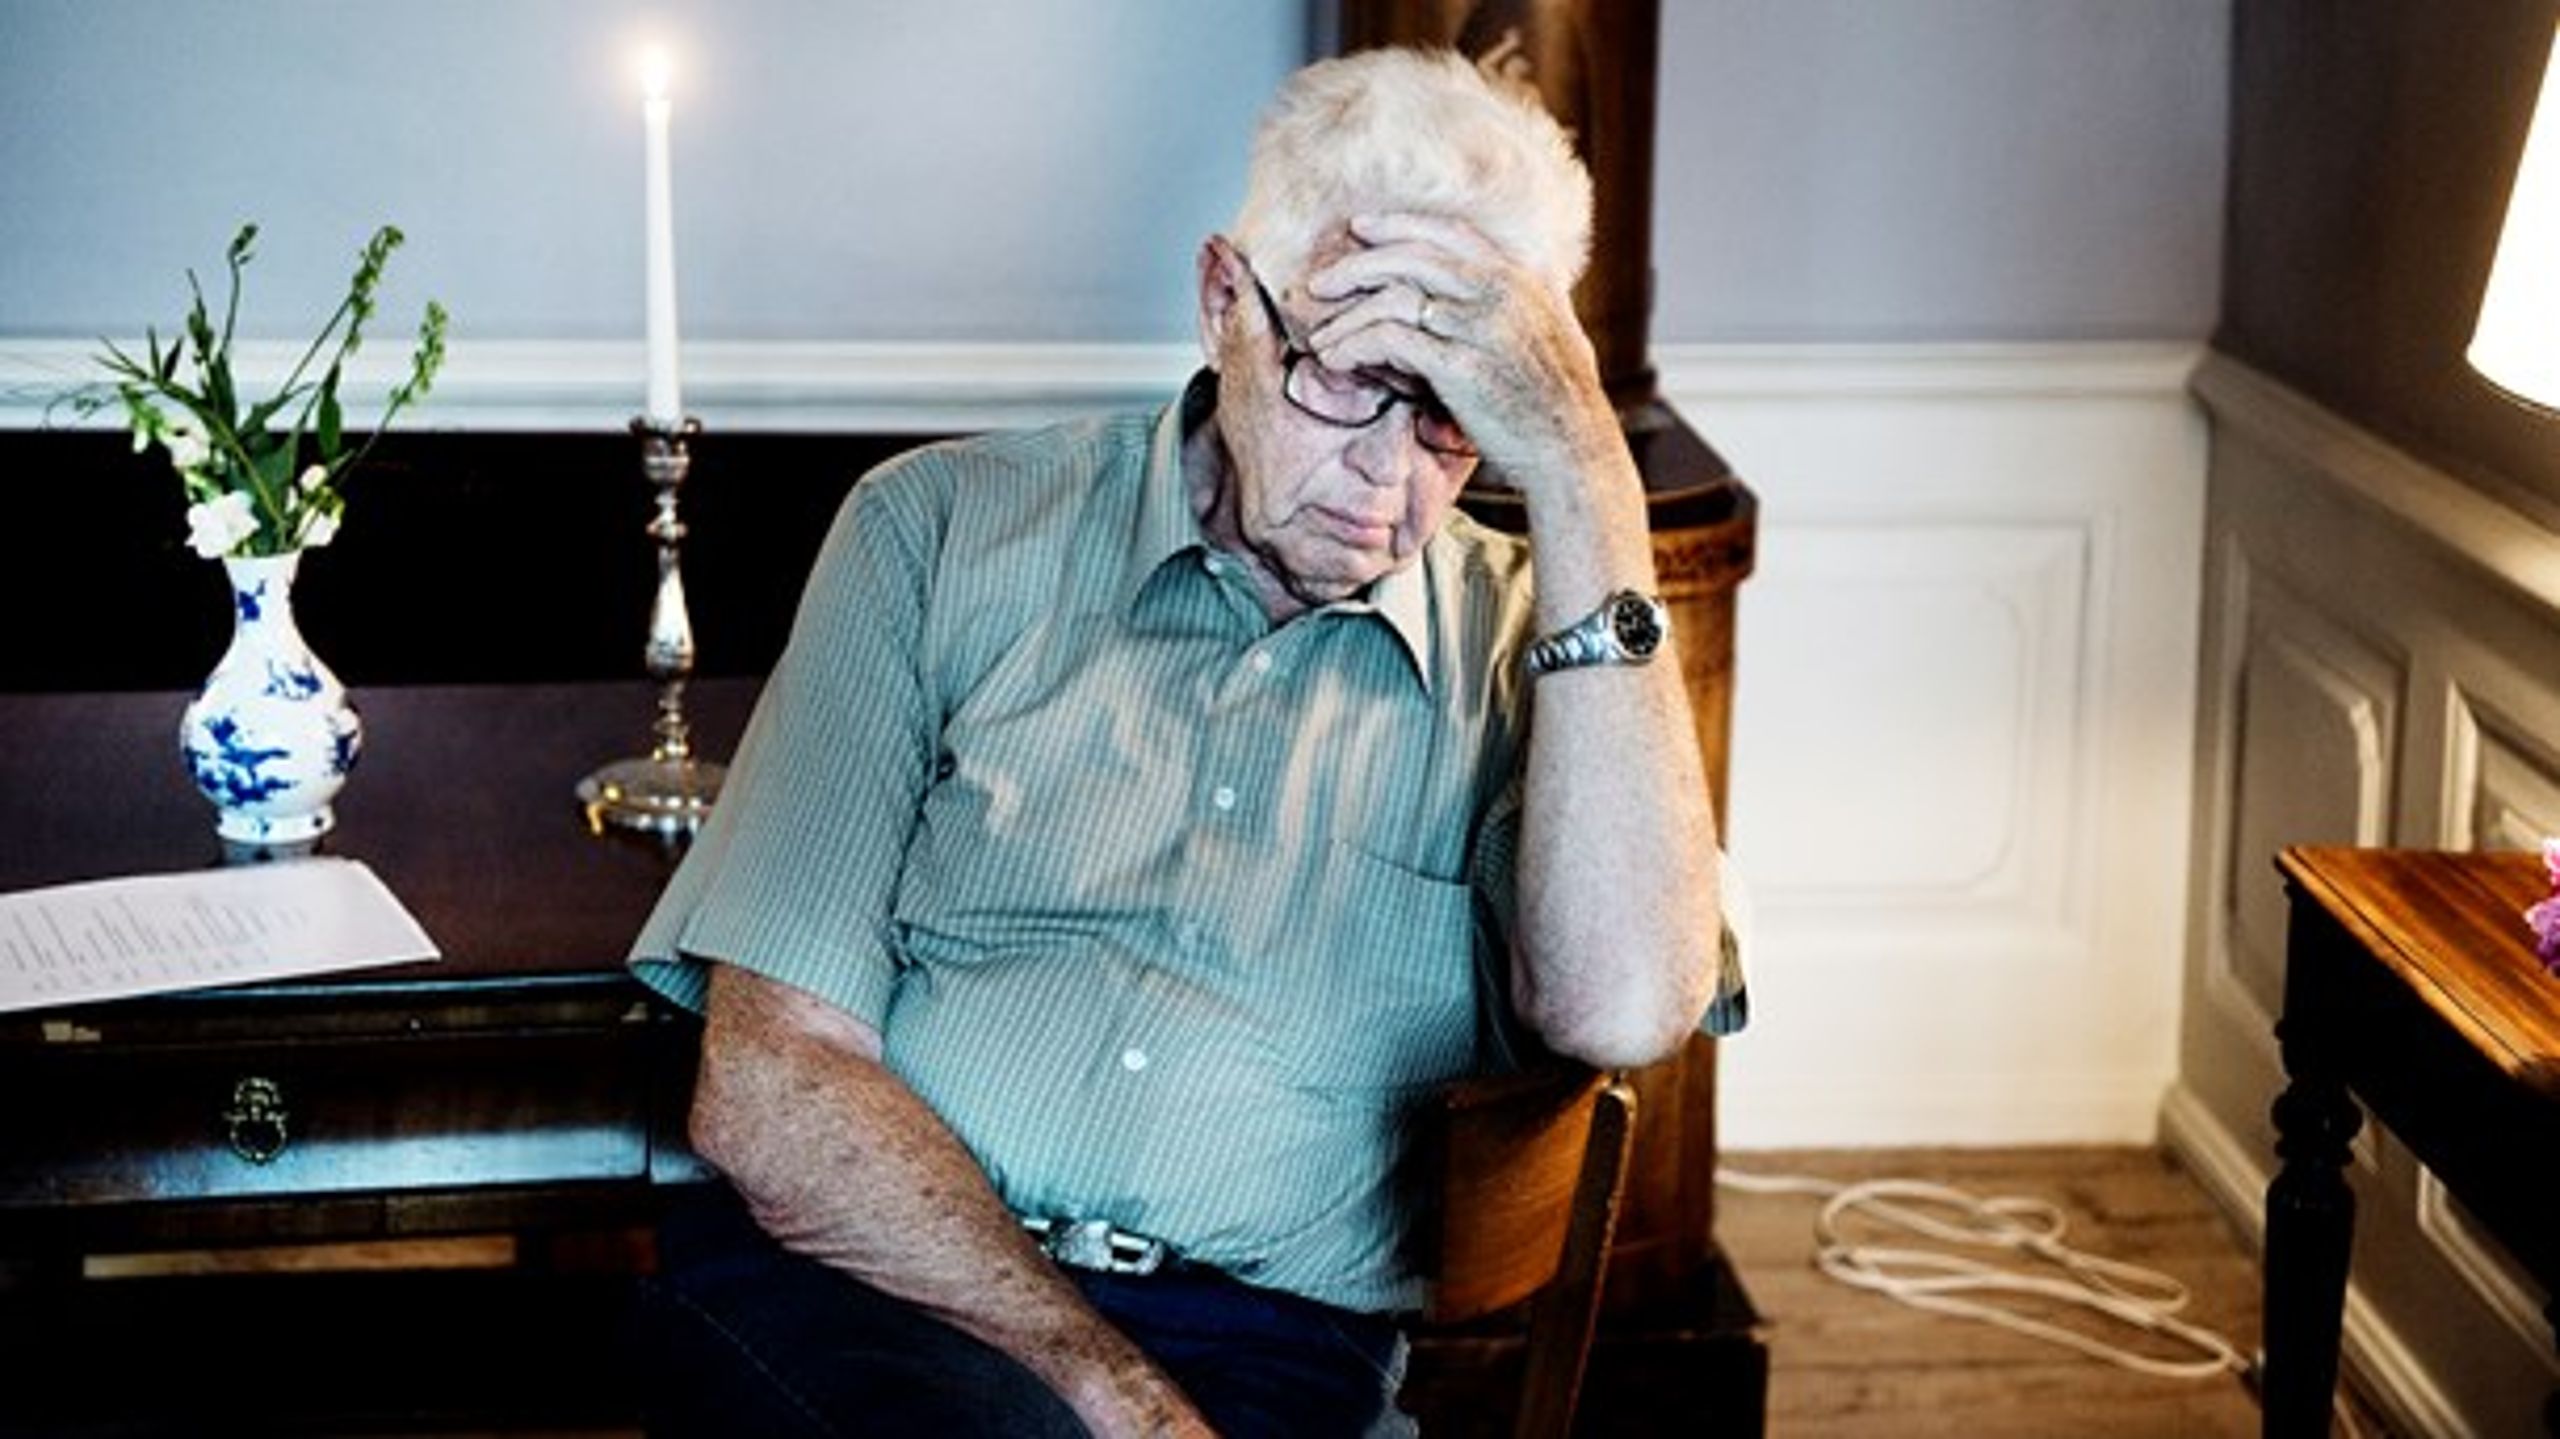 Problemet med ensomme ældre kan løses ved at bygge særlige bofællesskaber for seniorer, skriver Realdania.